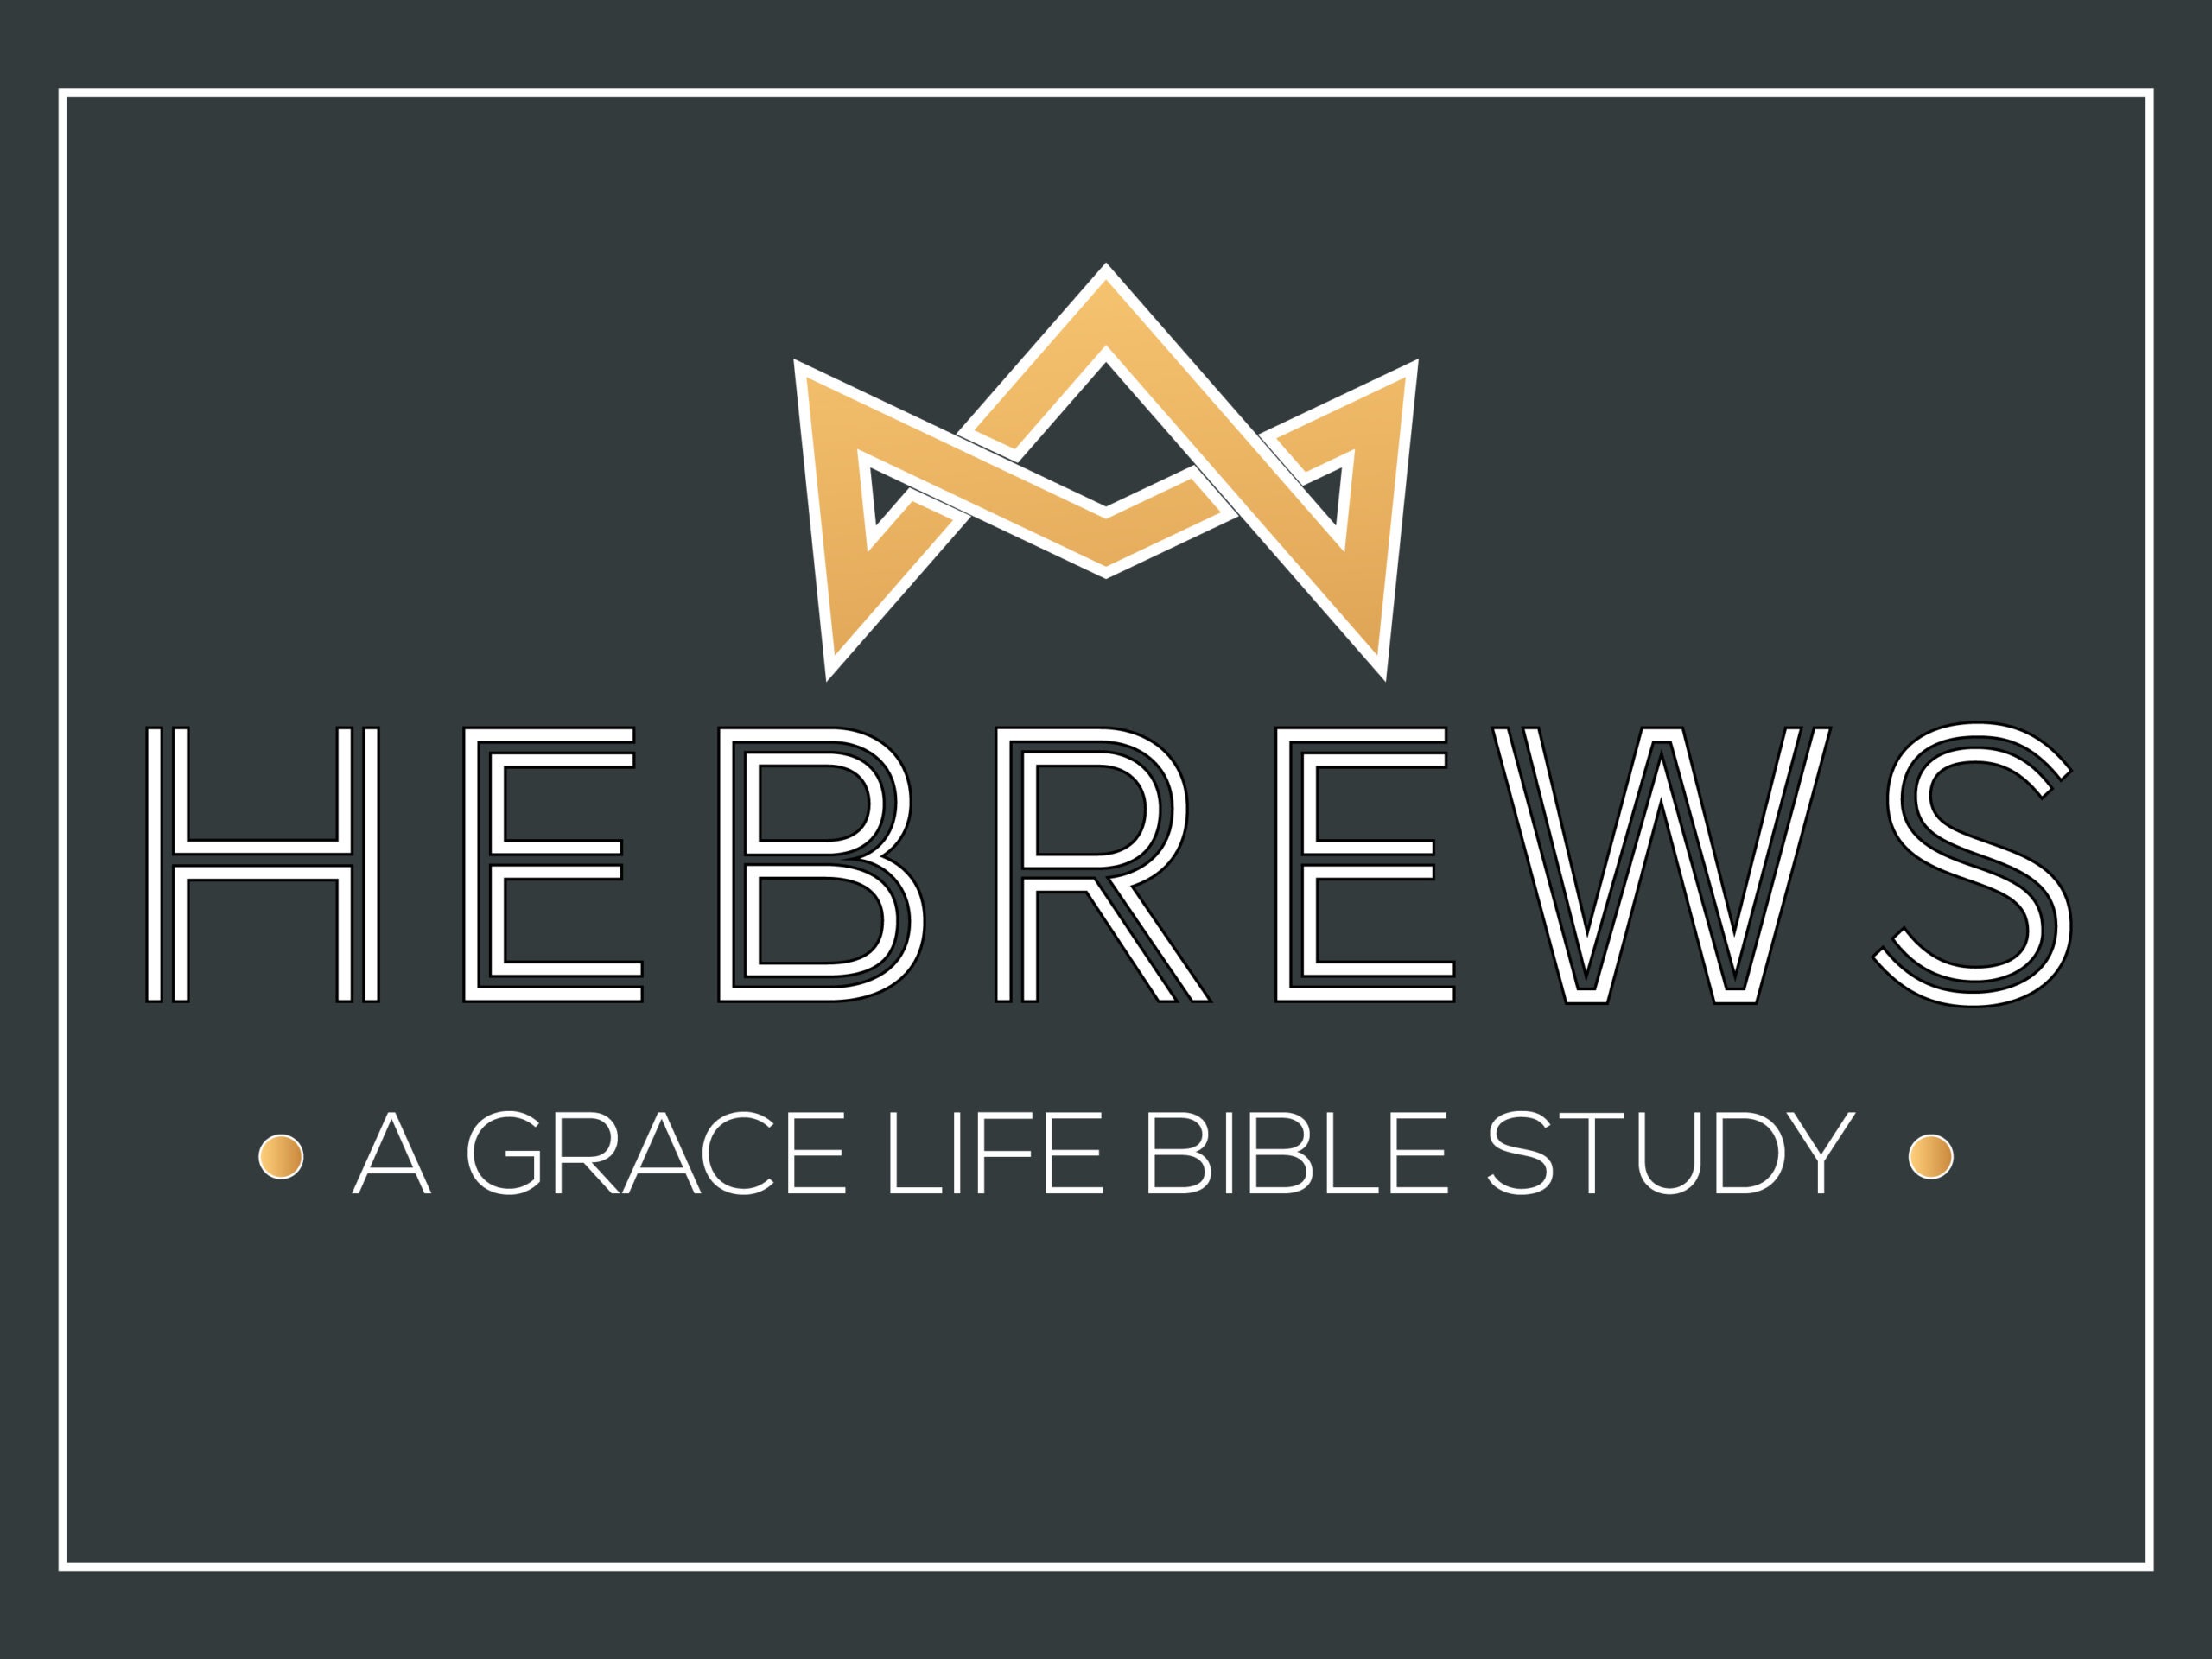 A Study on Hebrews 13:17-25